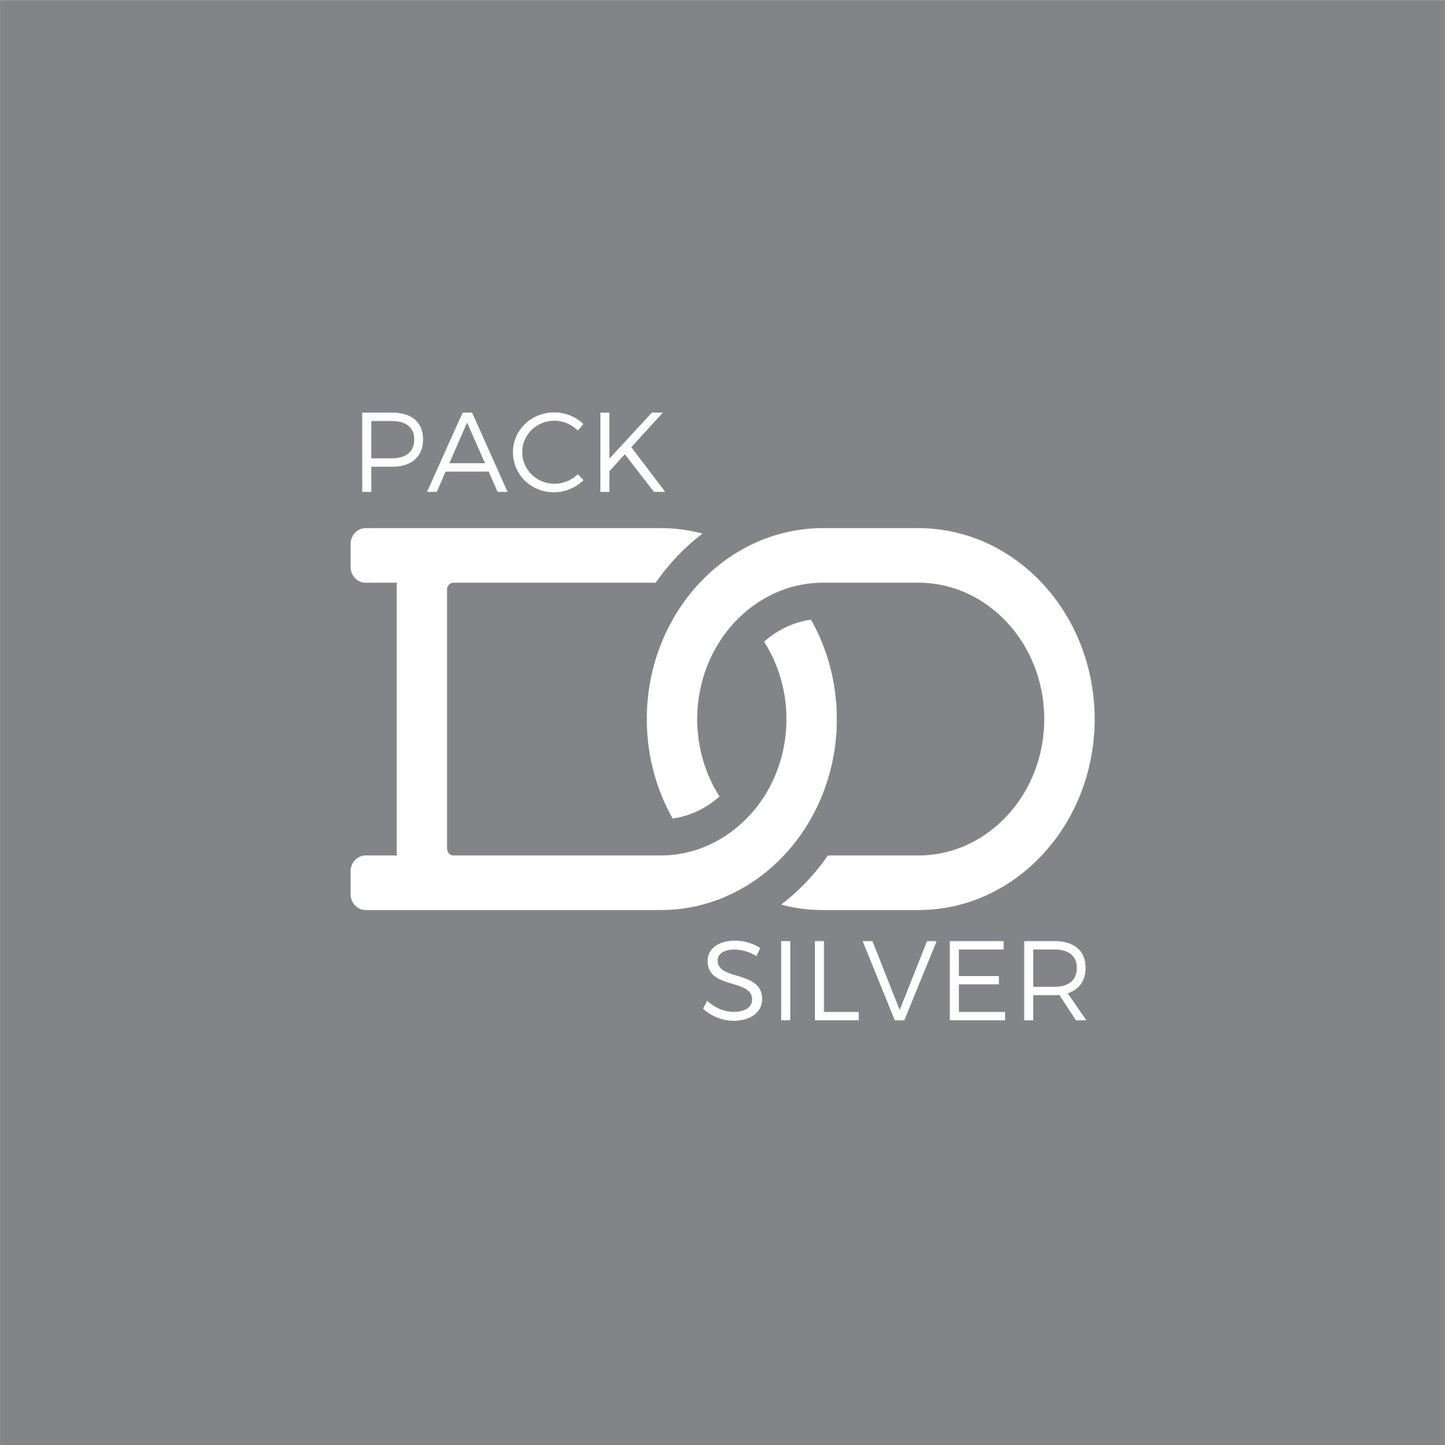 Plano Domni APP - Pack Silver